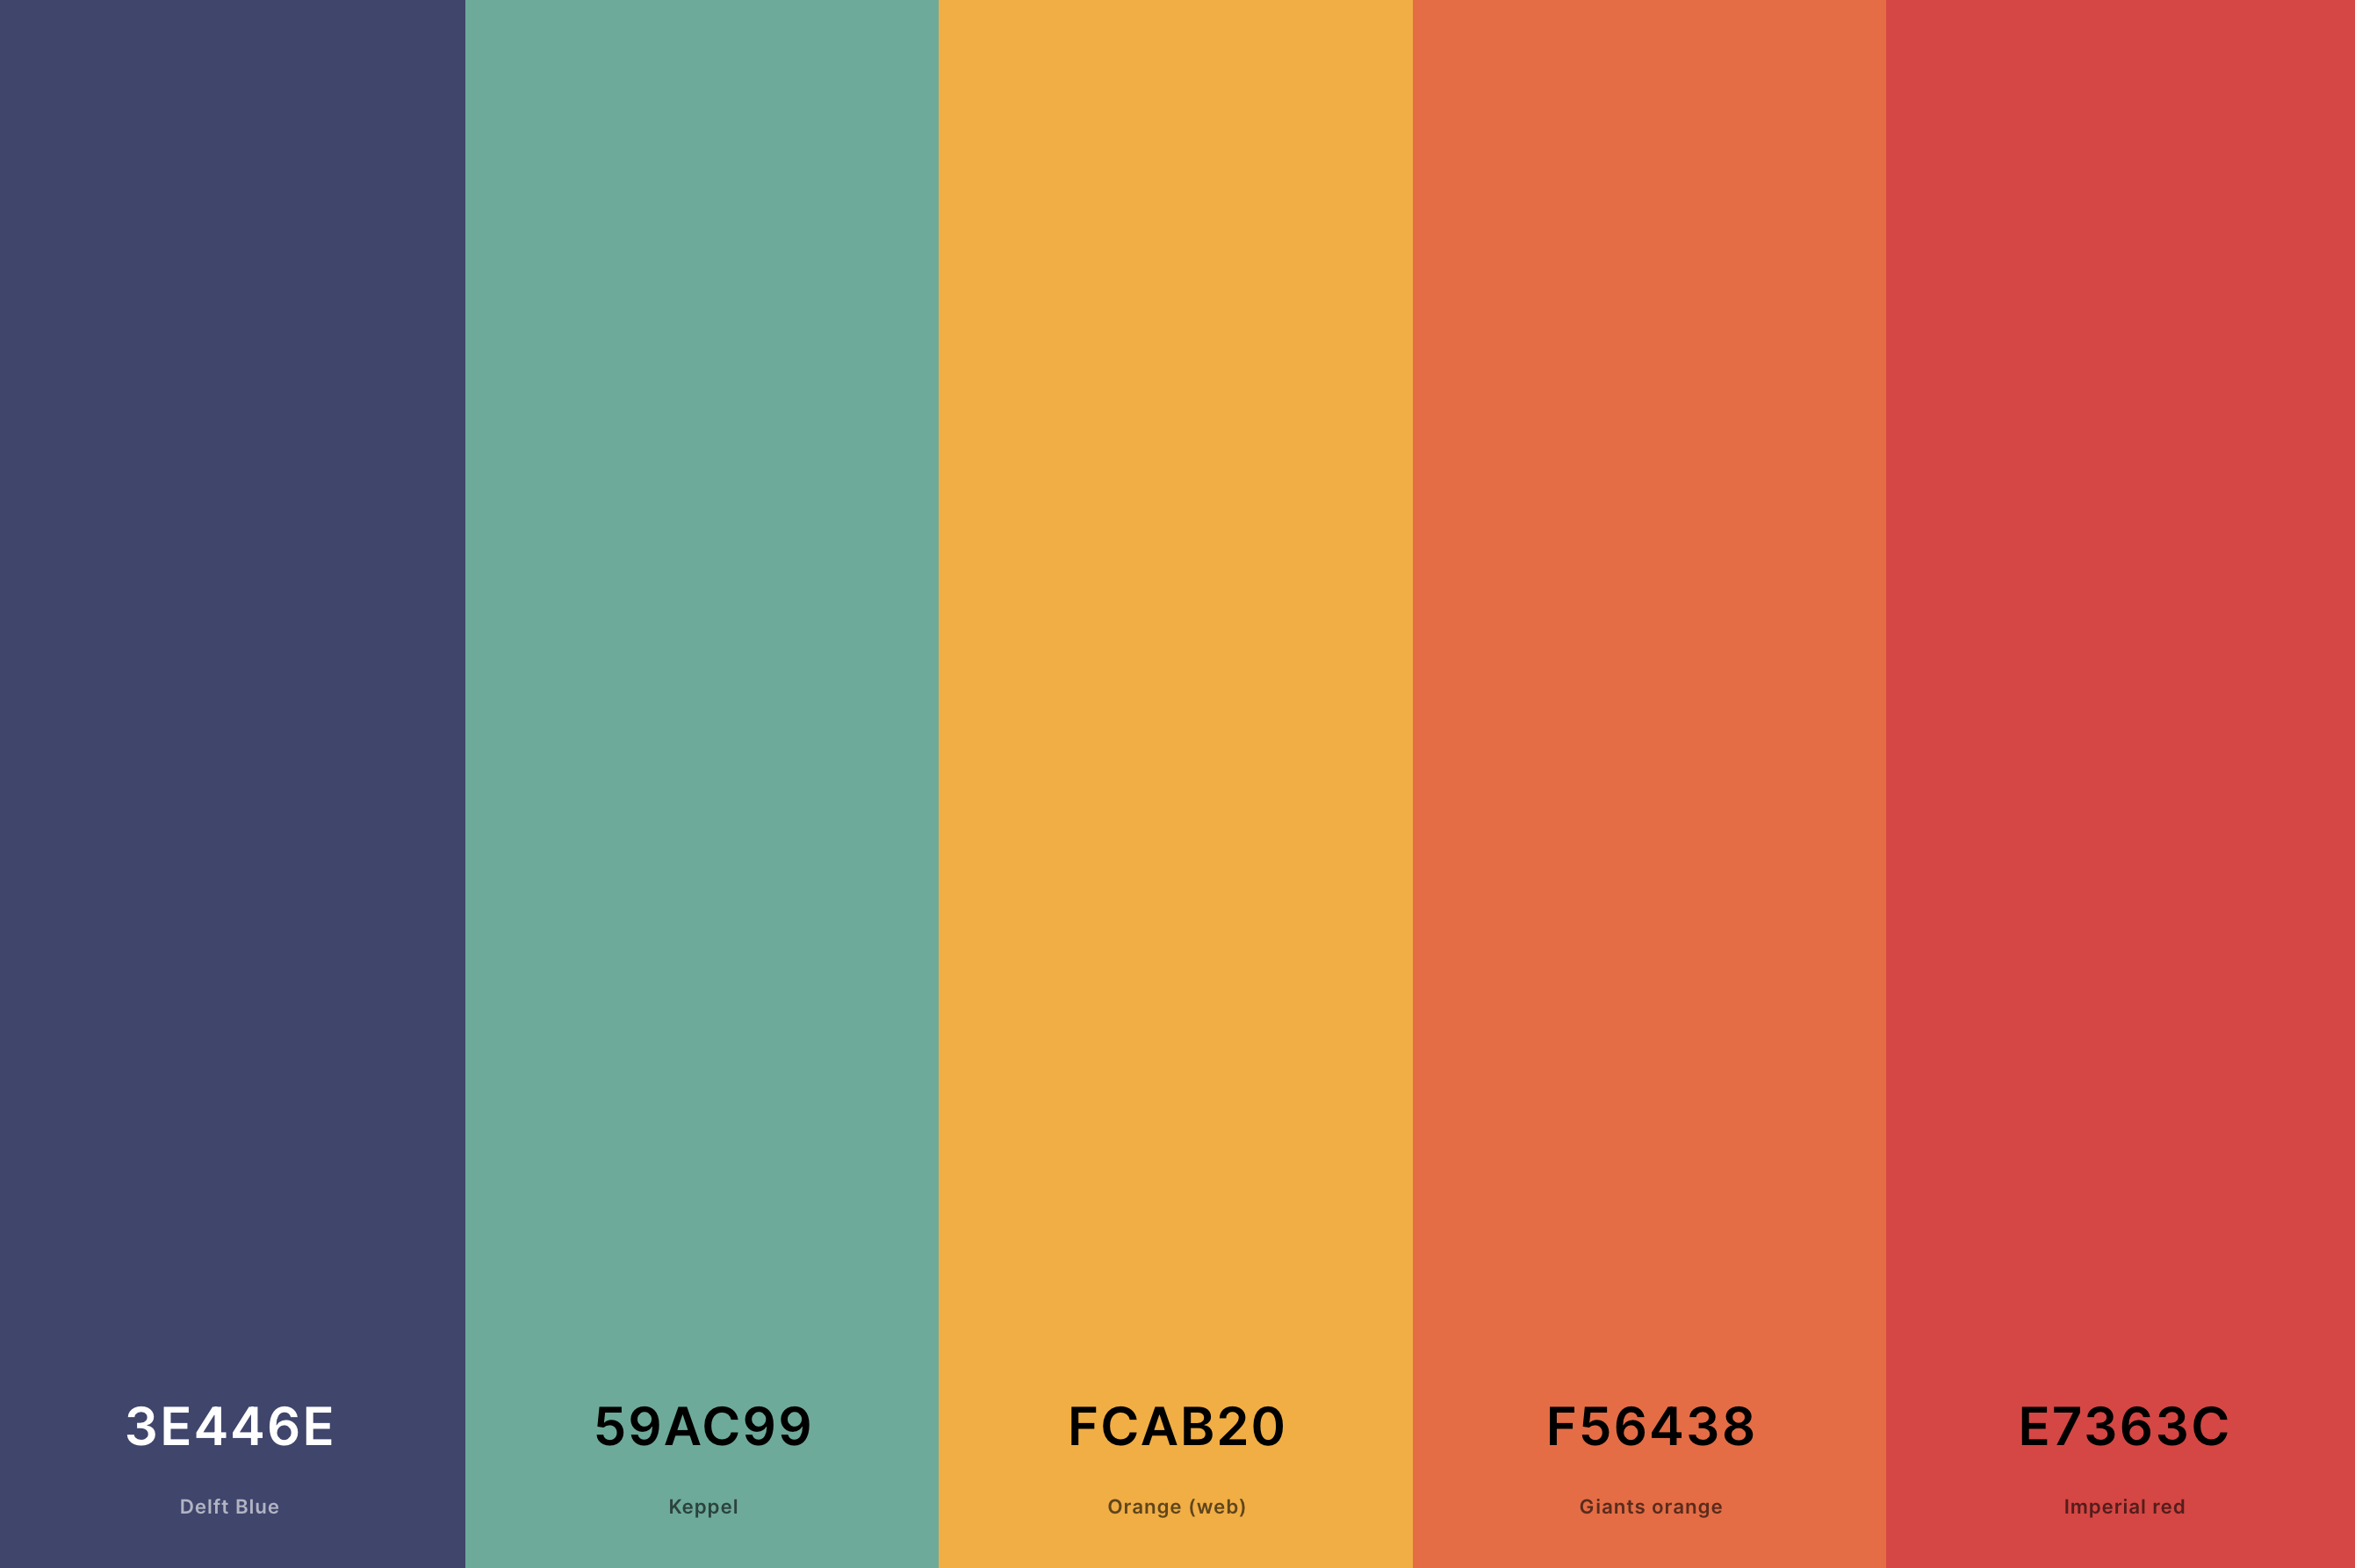 20. Retro Aesthetic Color Palette Color Palette with Delft Blue (Hex #3E446E) + Keppel (Hex #59AC99) + Orange (Web) (Hex #FCAB20) + Giants Orange (Hex #F56438) + Imperial Red (Hex #E7363C) Color Palette with Hex Codes